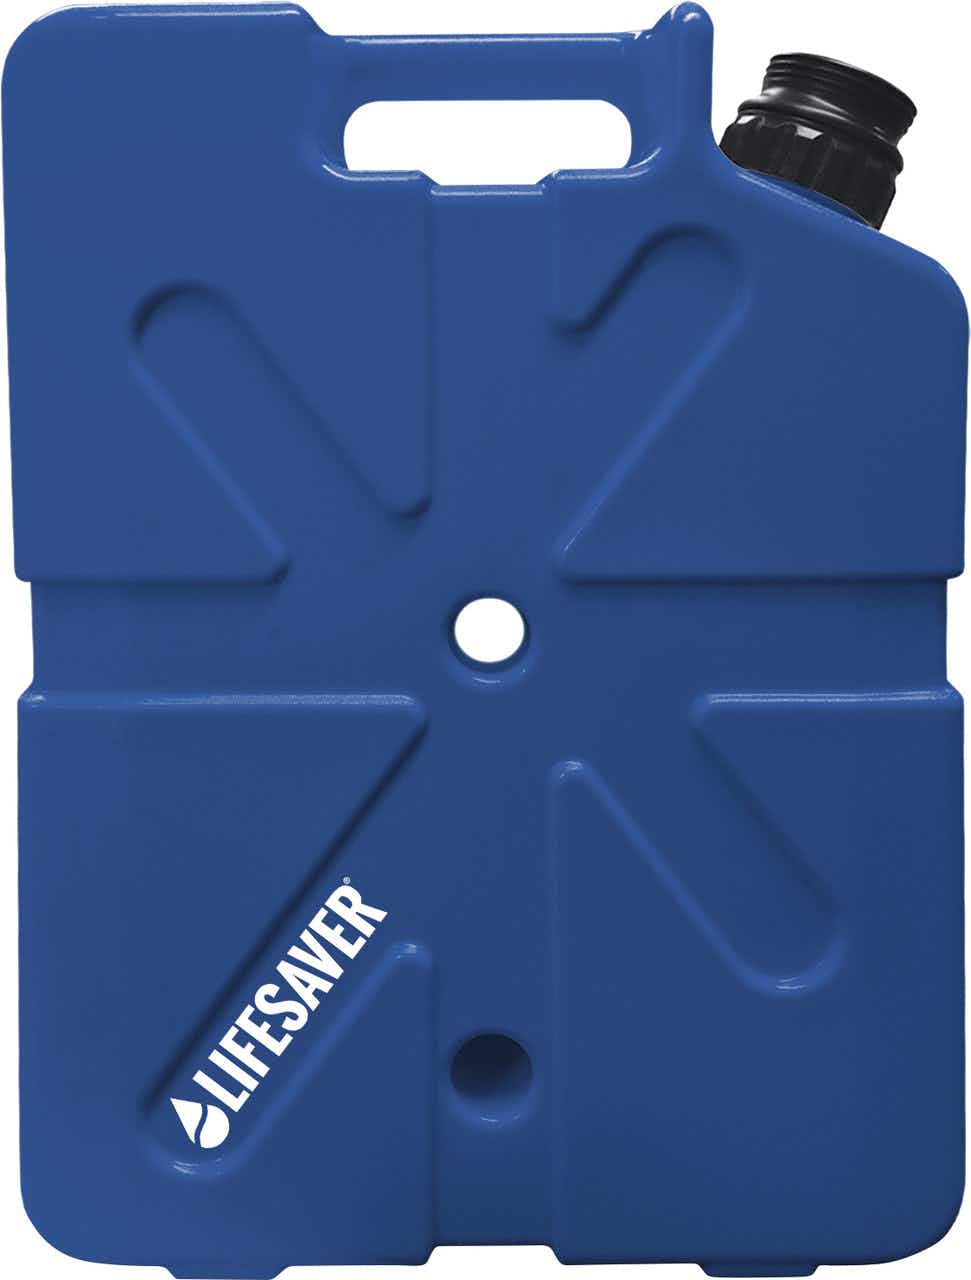 JerryCan 20000 UF Water Purifier Dark Blue